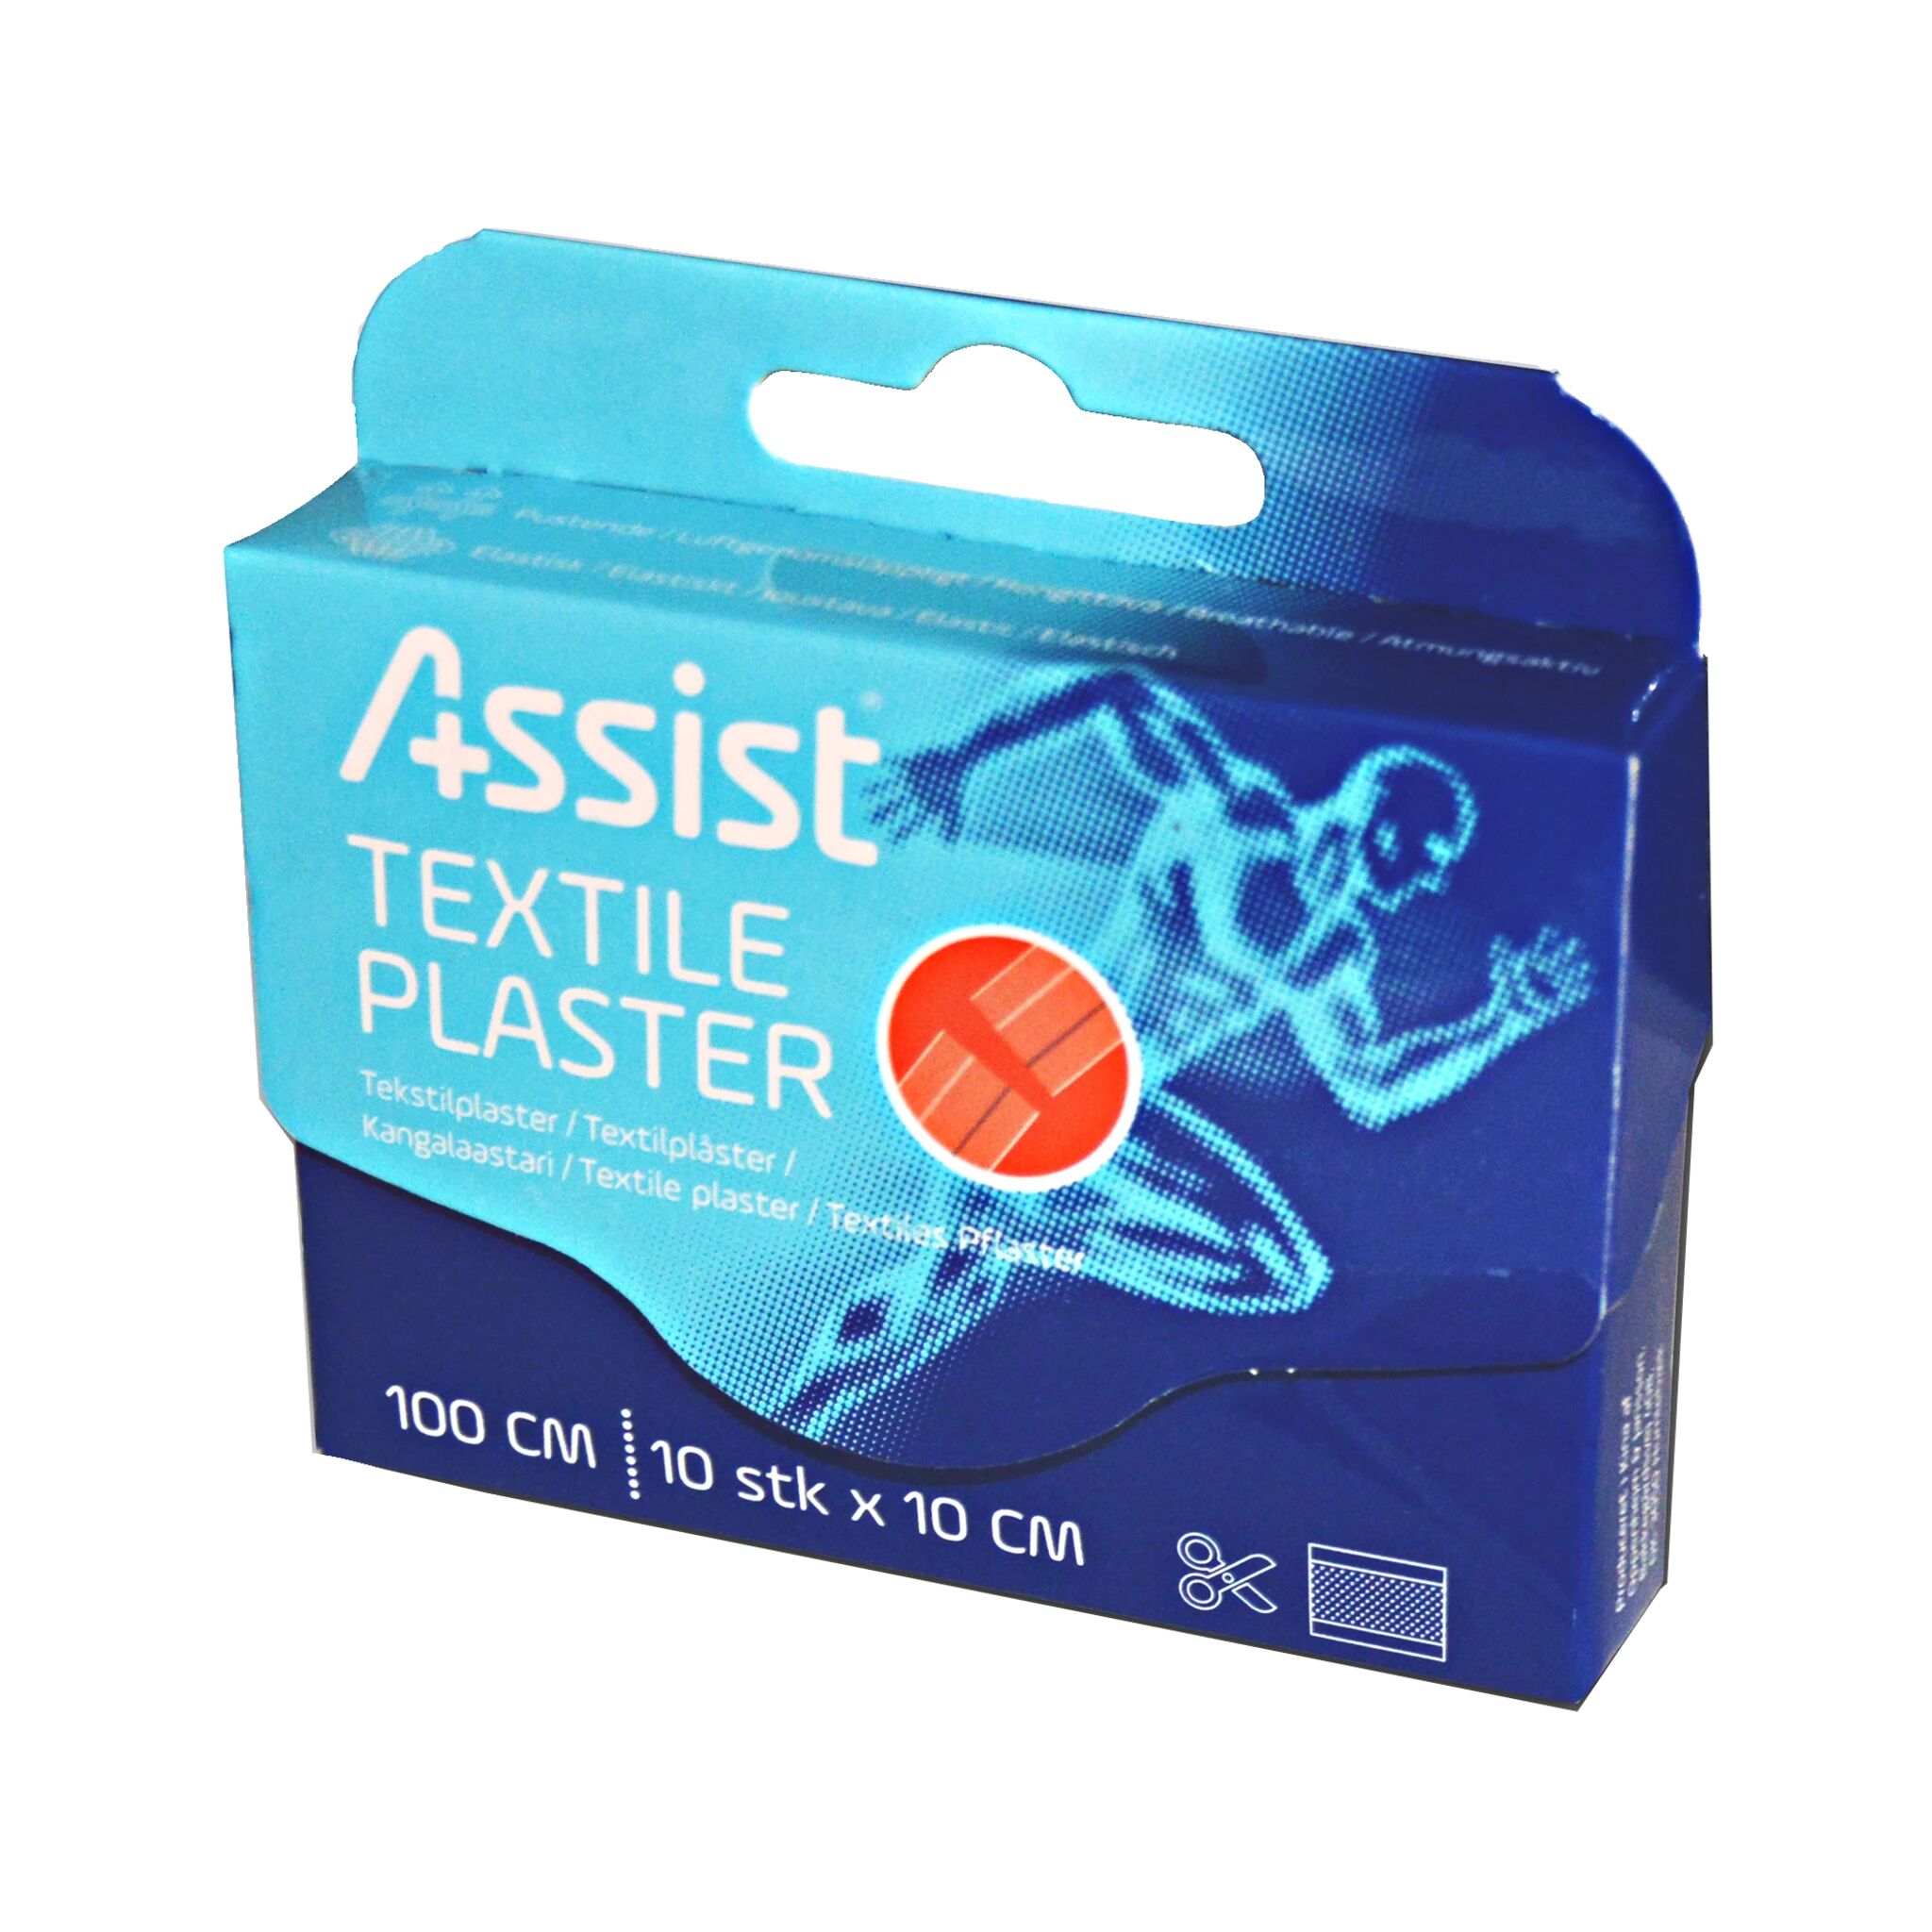 Assist Textile Plaster, plaster 100 cm (10 pcs x 10c NO COLOUR